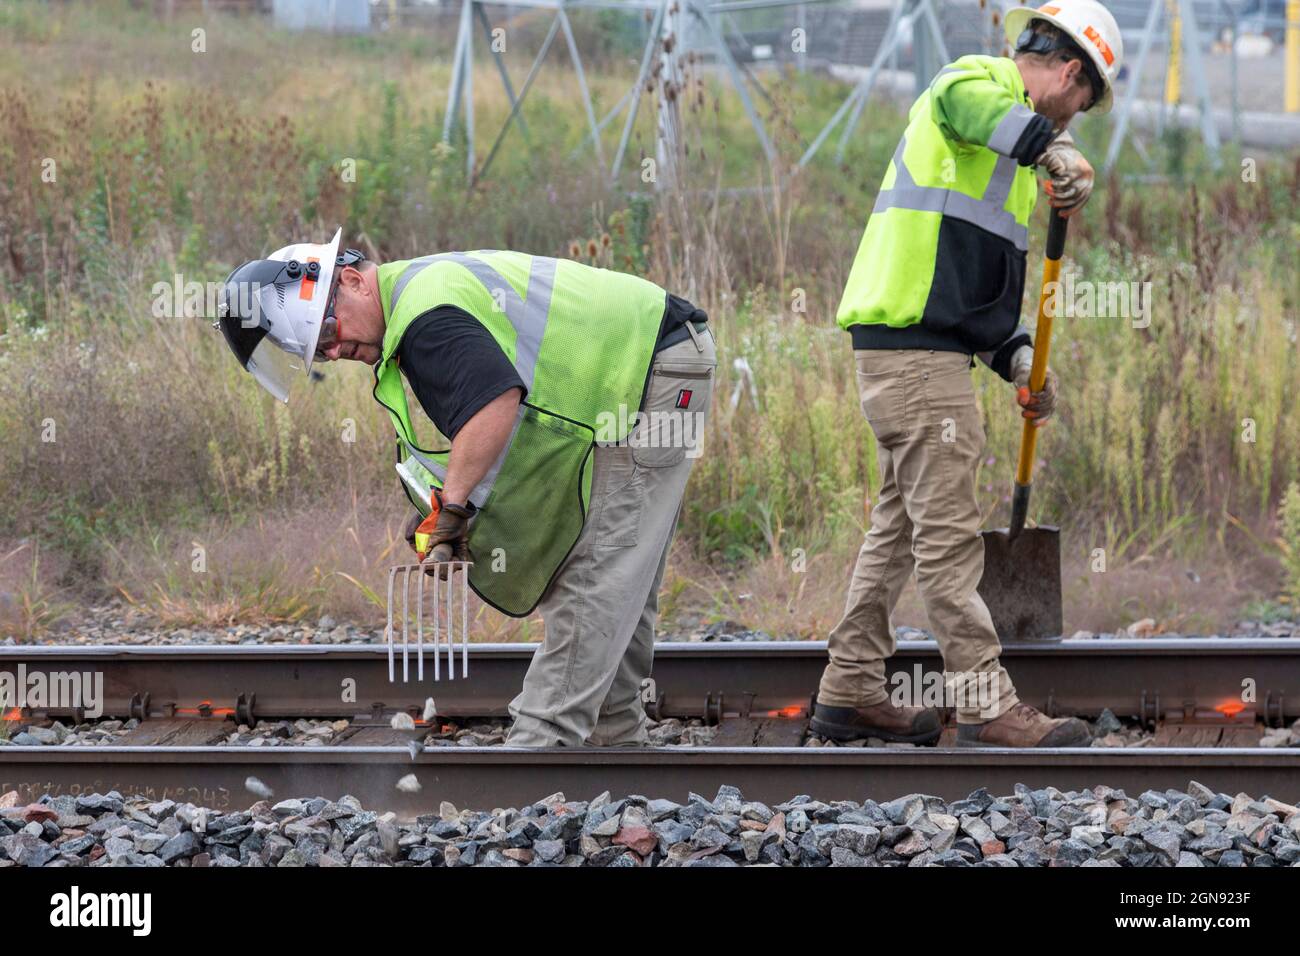 Pontiac, Michigan - Un equipaggio di manutenzione ferroviaria lavora sui binari della CN Railroad, pulendo i detriti per prepararsi alle riparazioni dei binari. Foto Stock